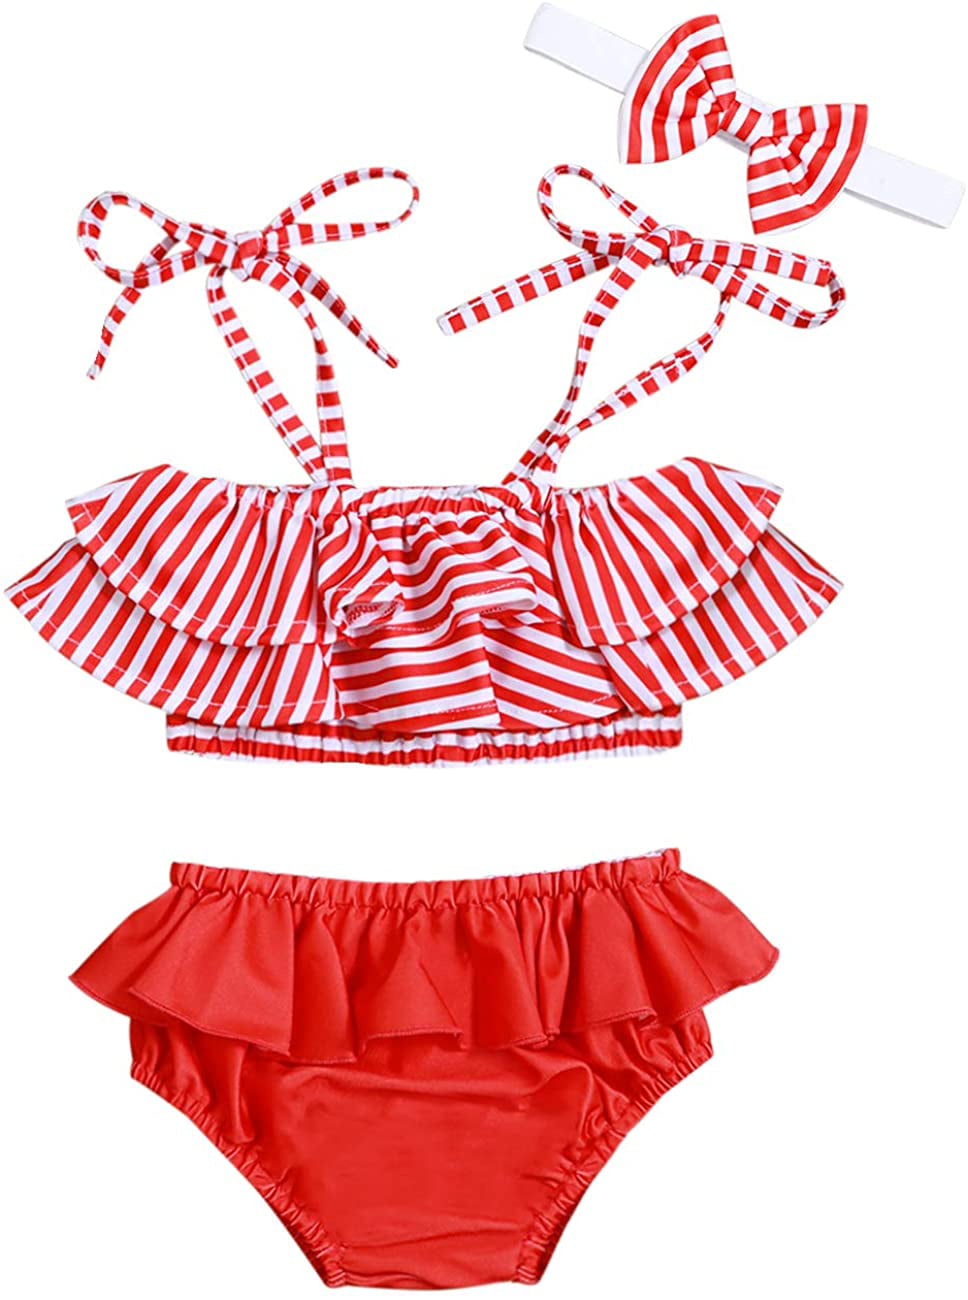 Baby Girl Swimsuit Ruffle Red Dot Top and Bikinis Skirt with Headband 2 Piece Swimwear